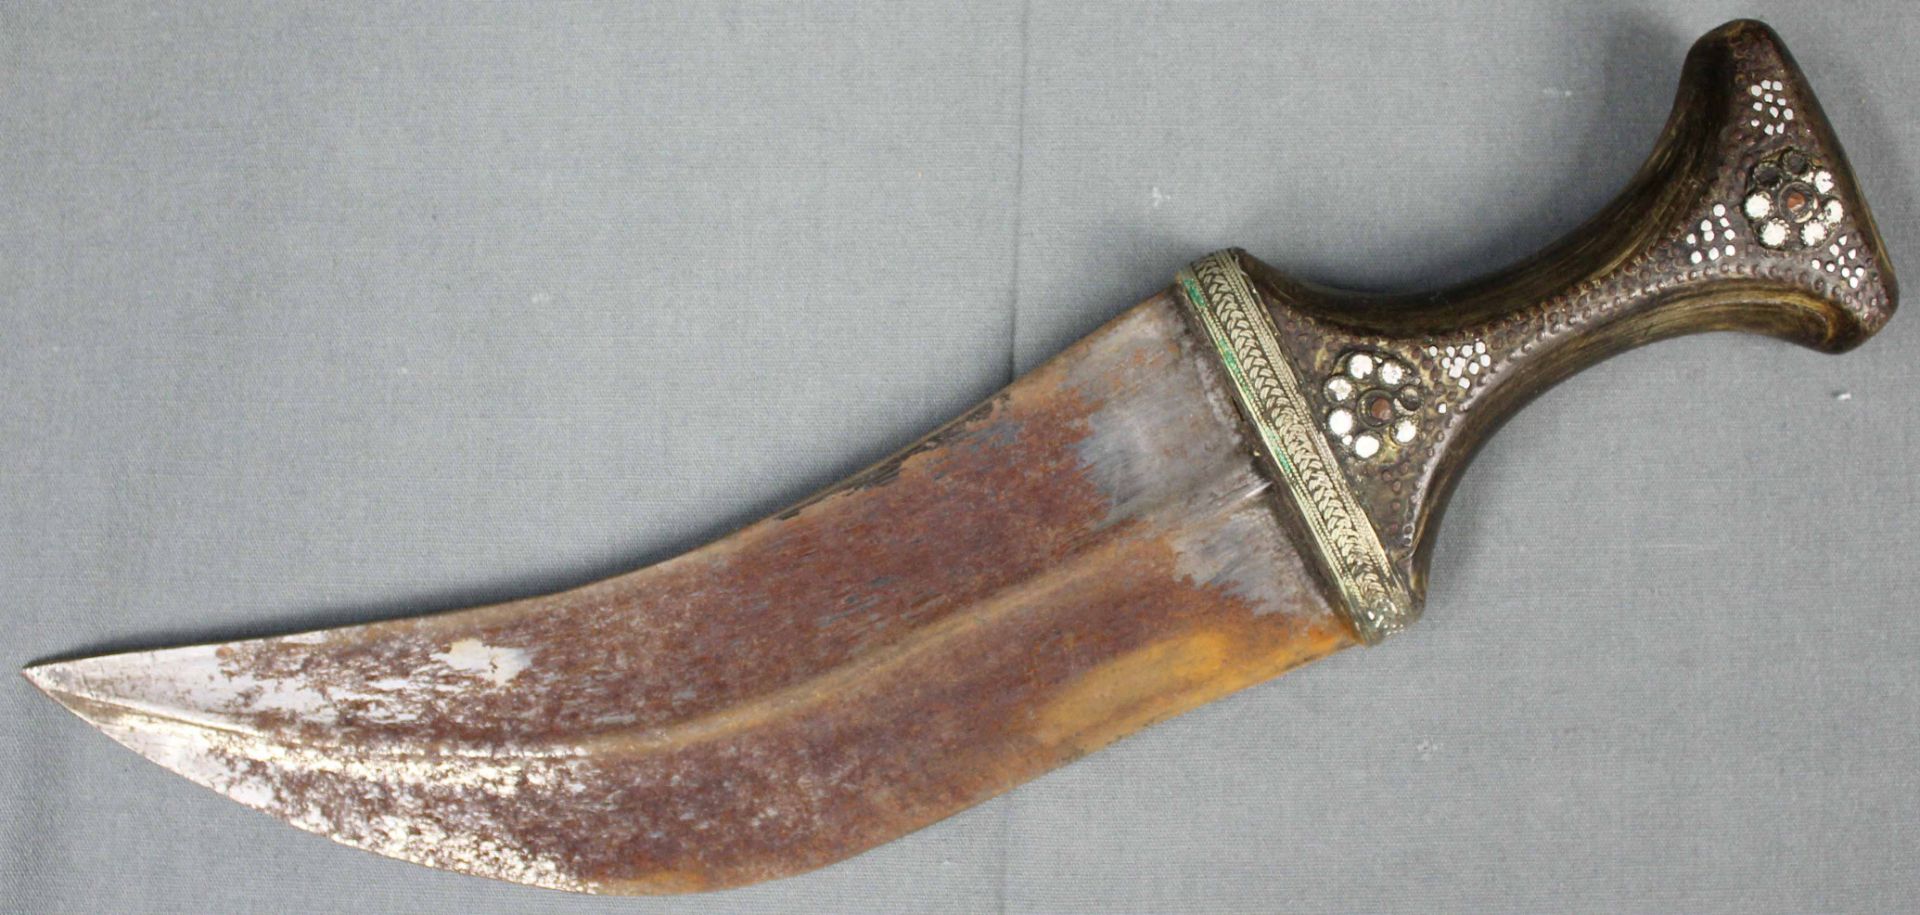 Jambia curved dagger. Arabia. Antique, around 150-250 years old. - Bild 4 aus 14